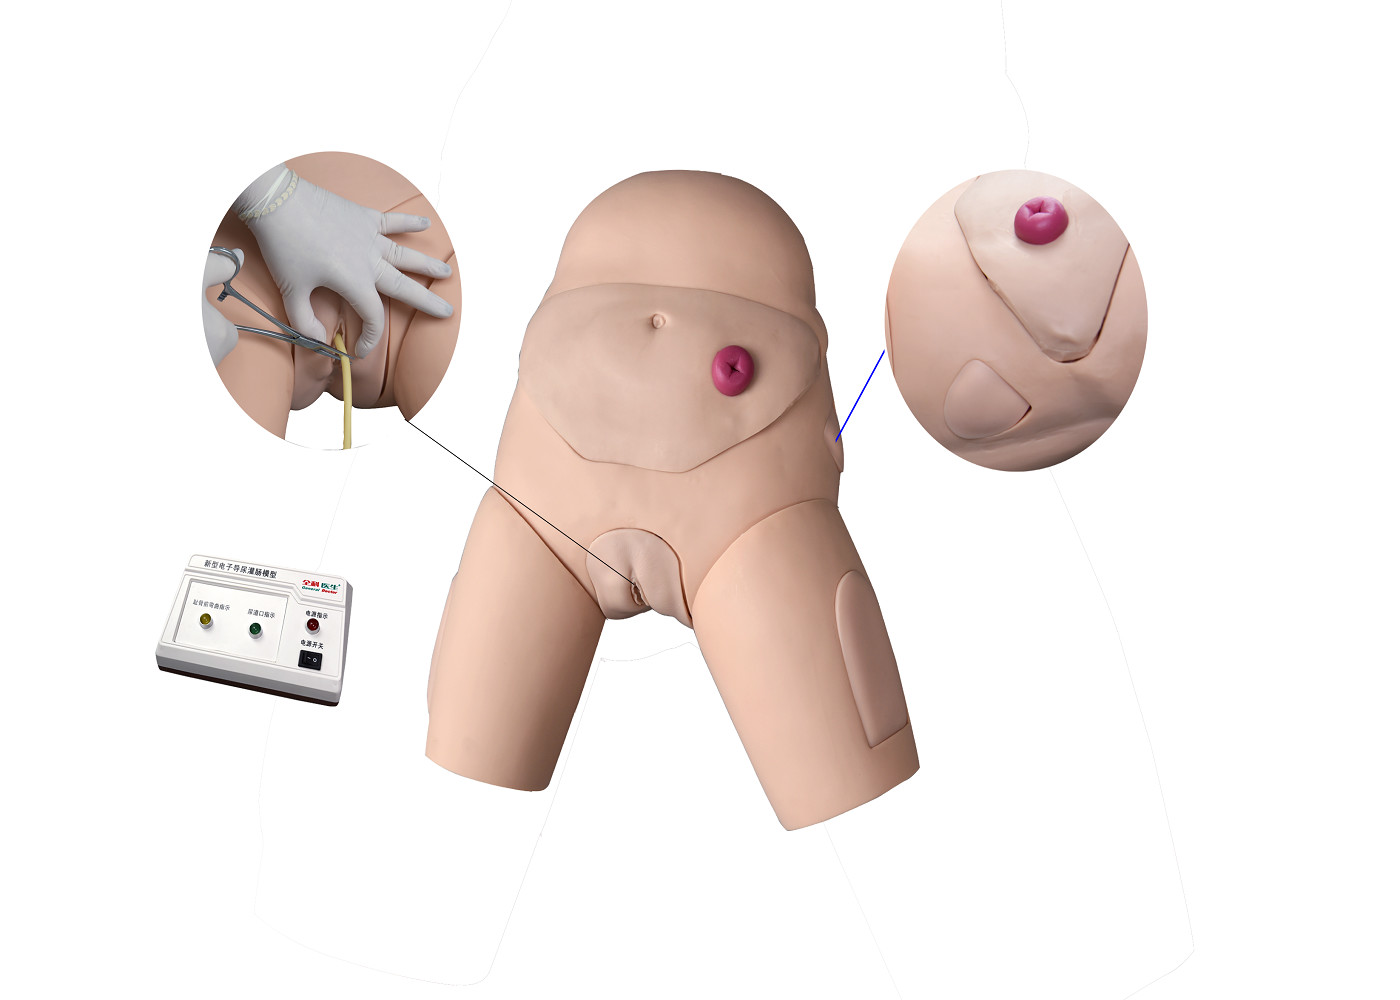 Simulador Urethral eletrônico do treinamento do cateterismo e do enema